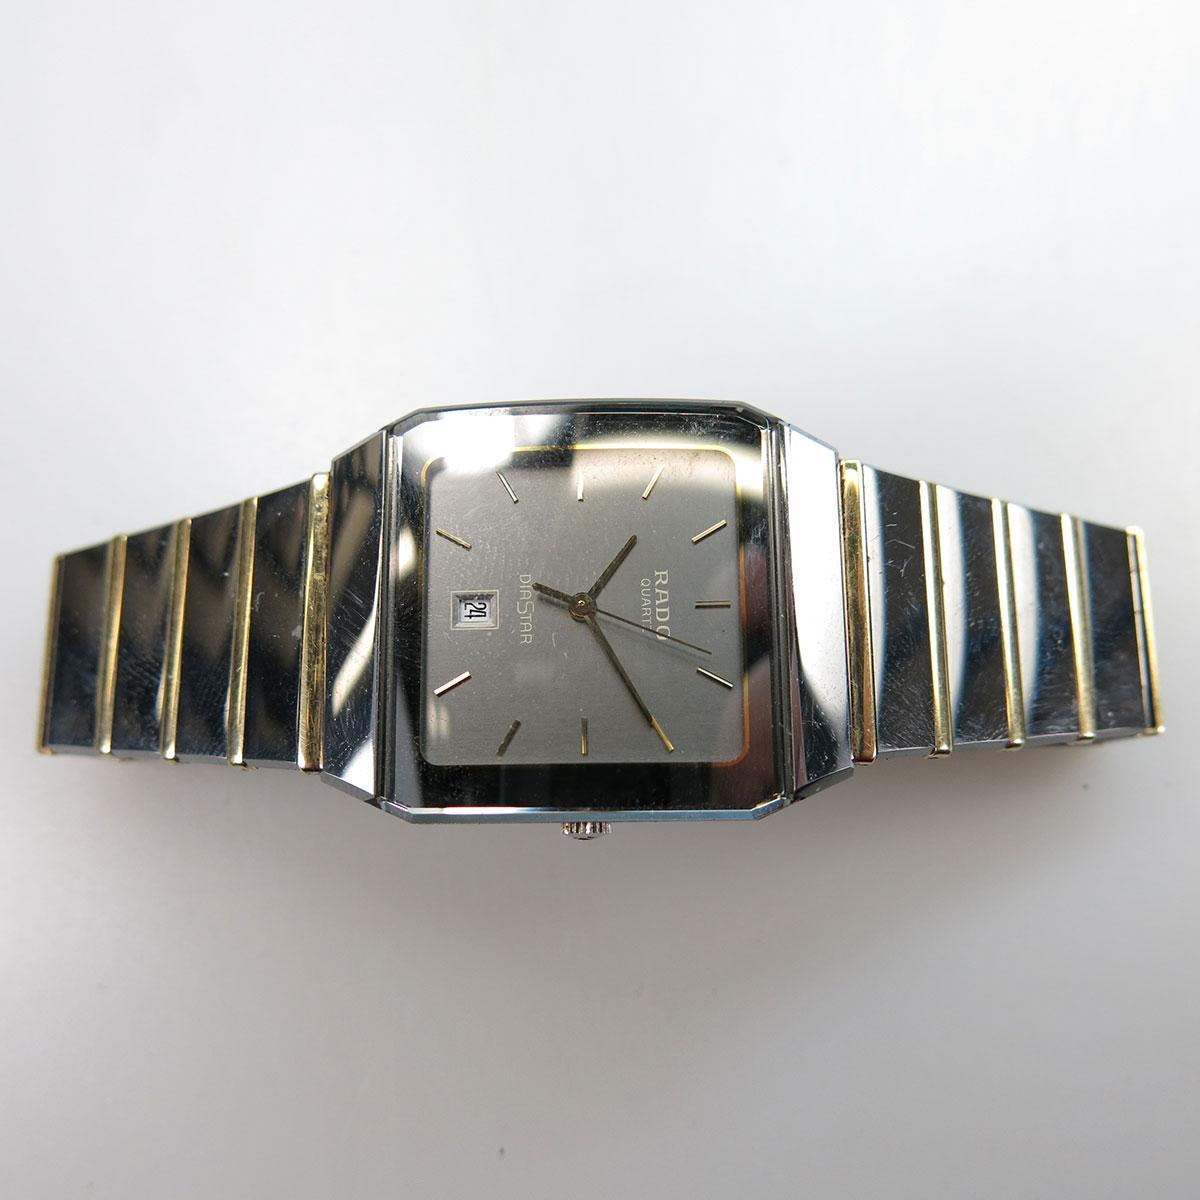 Rado “Diastar Anatom” Wristwatch, With Date